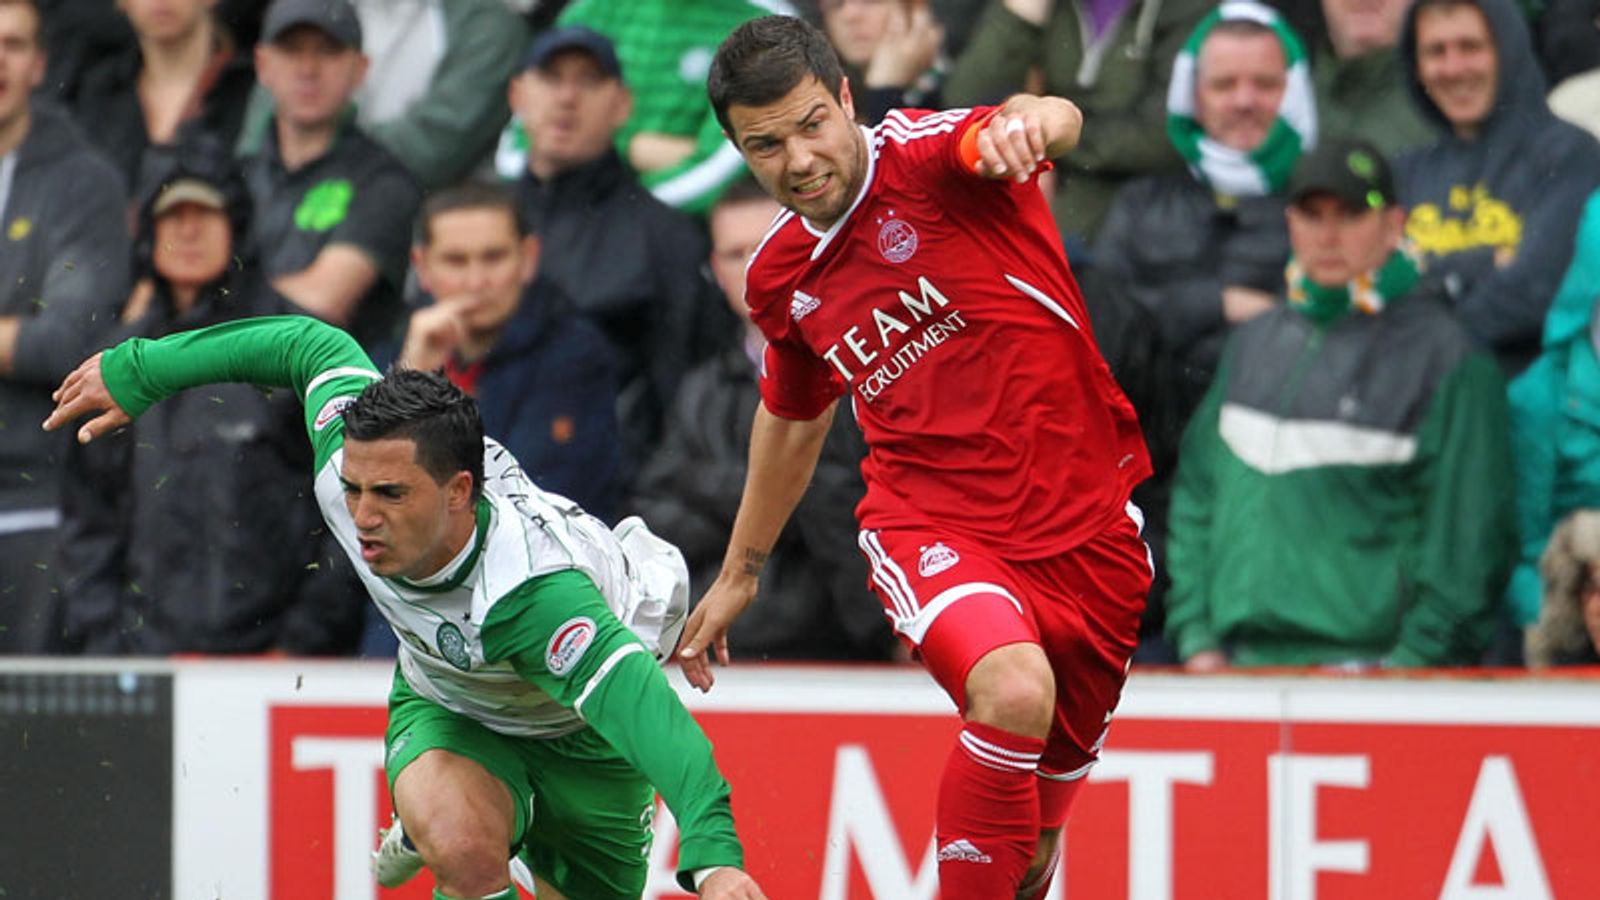 Aberdeen 0 - 1 Celtic - Match Report & Highlights